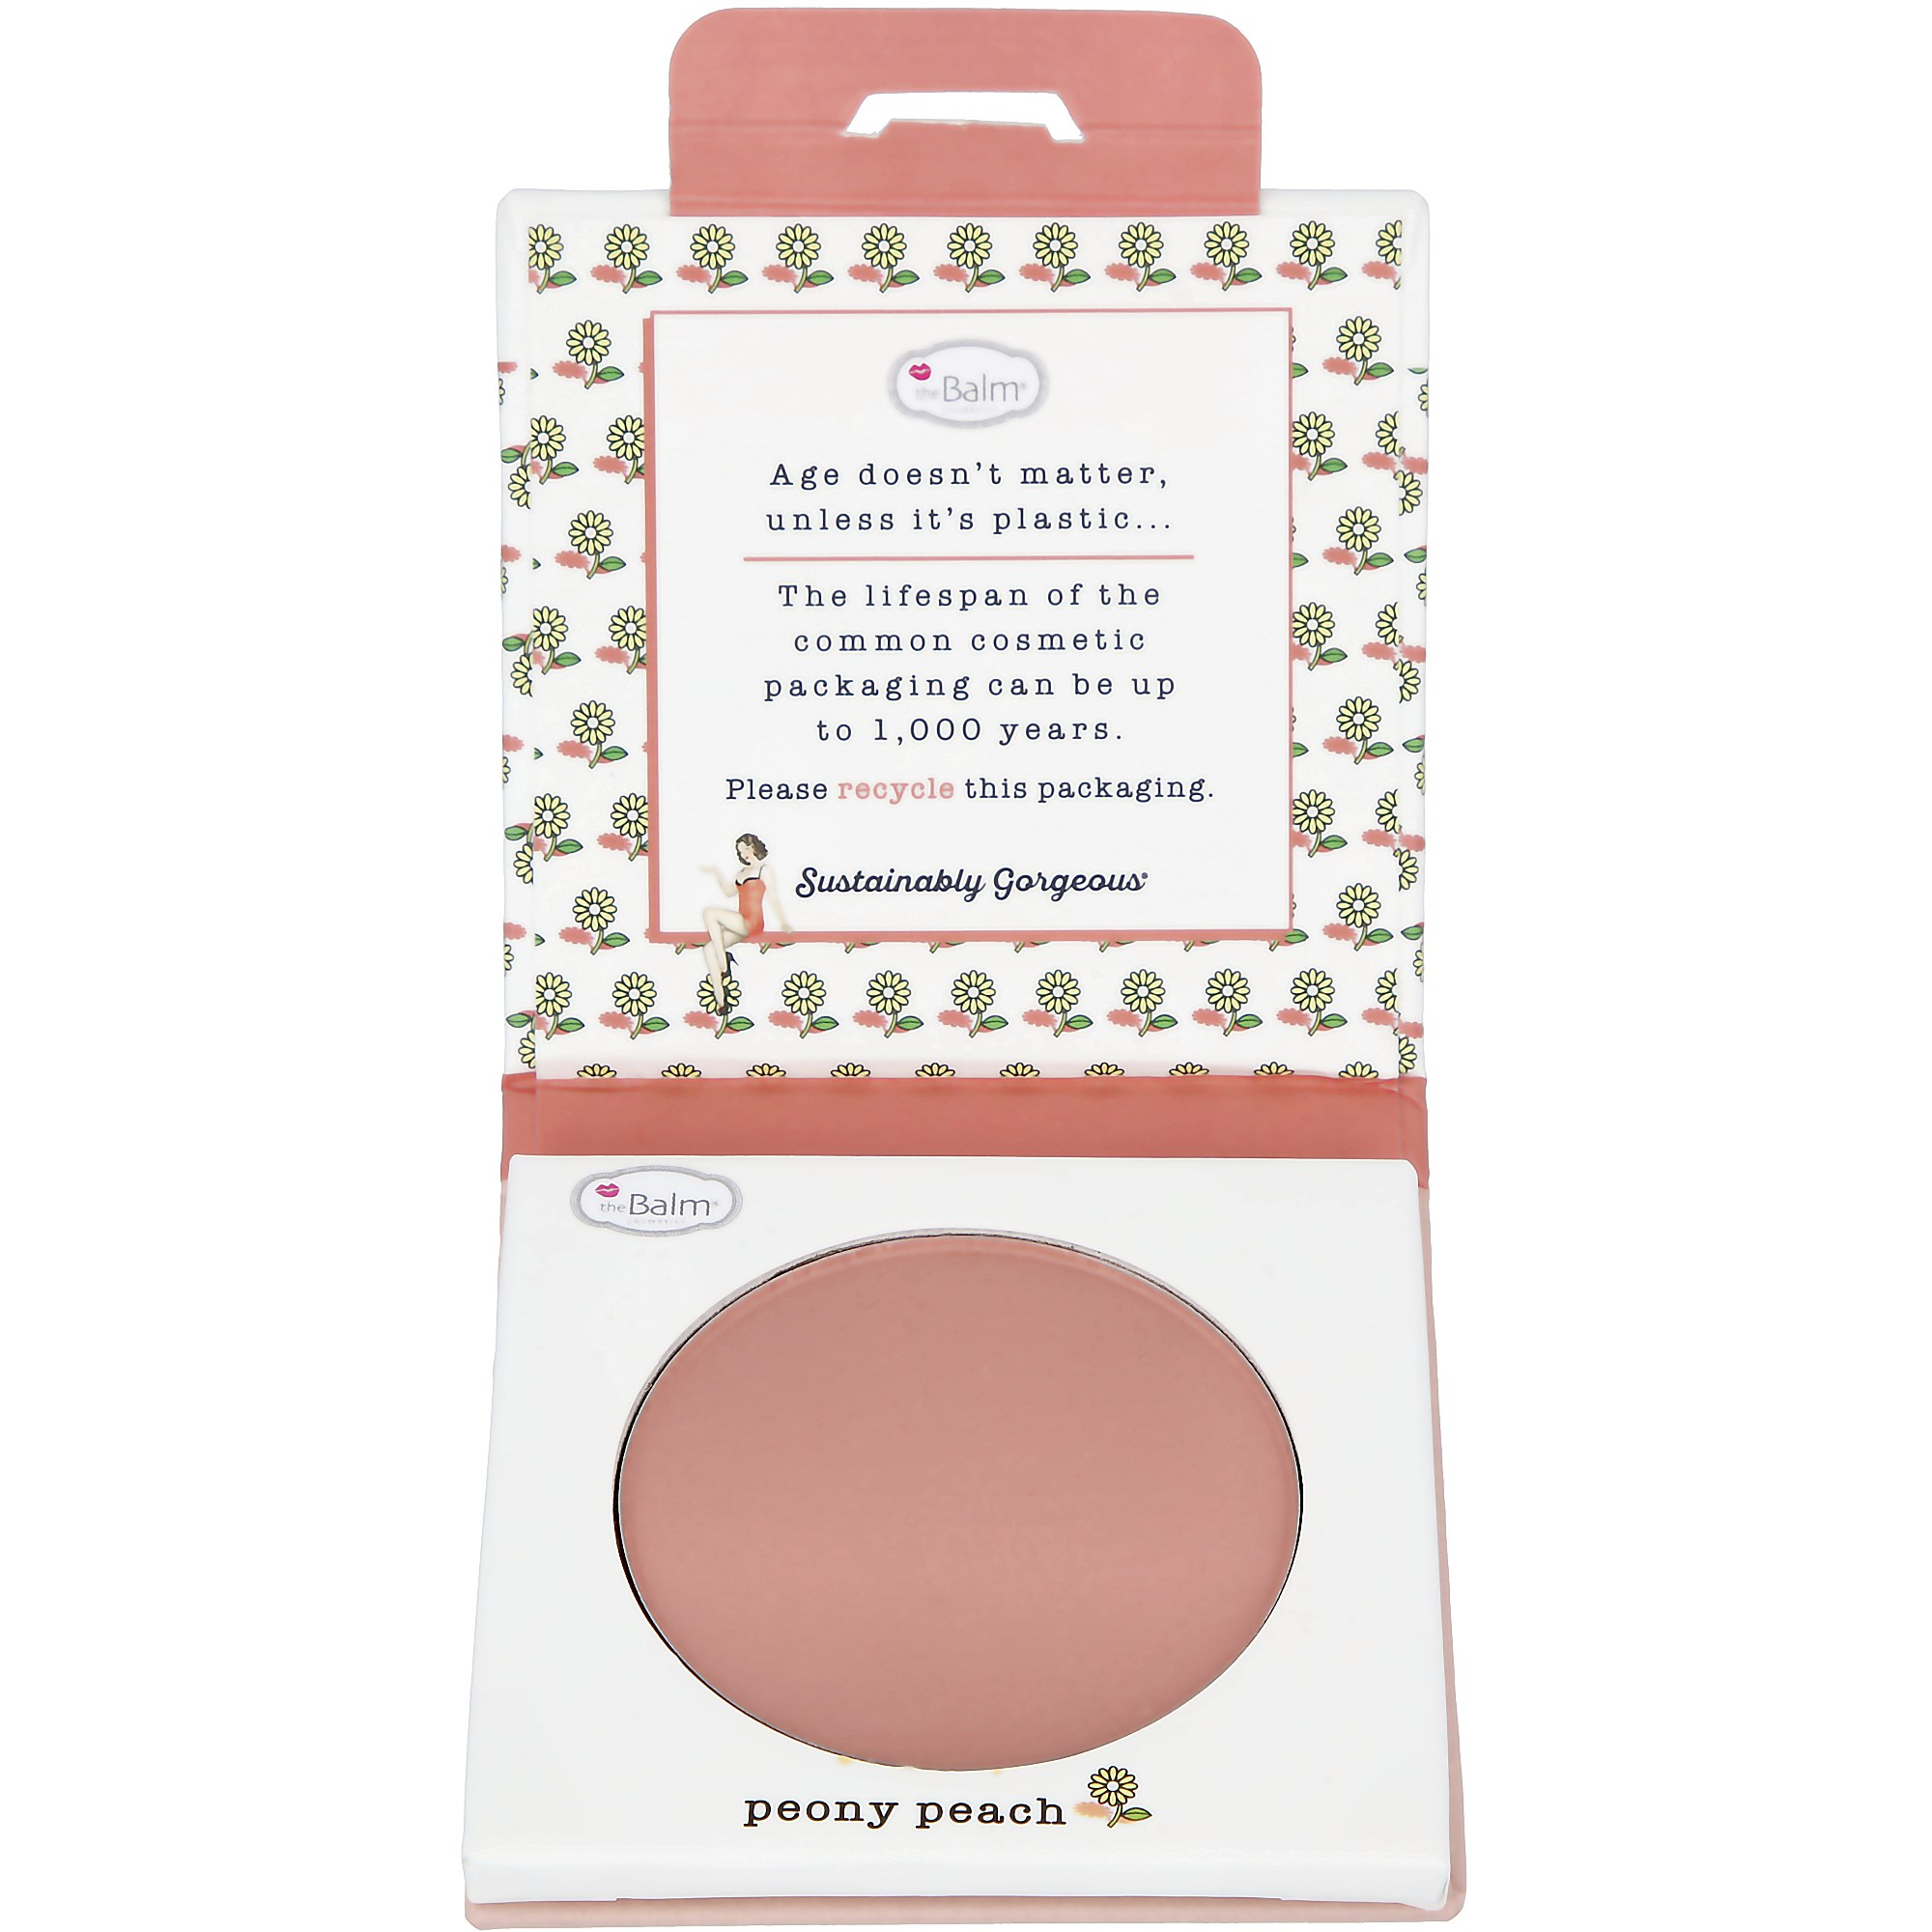 the Balm Sustainably Gorgeous Botanical Blush Single Blush Peony Peach